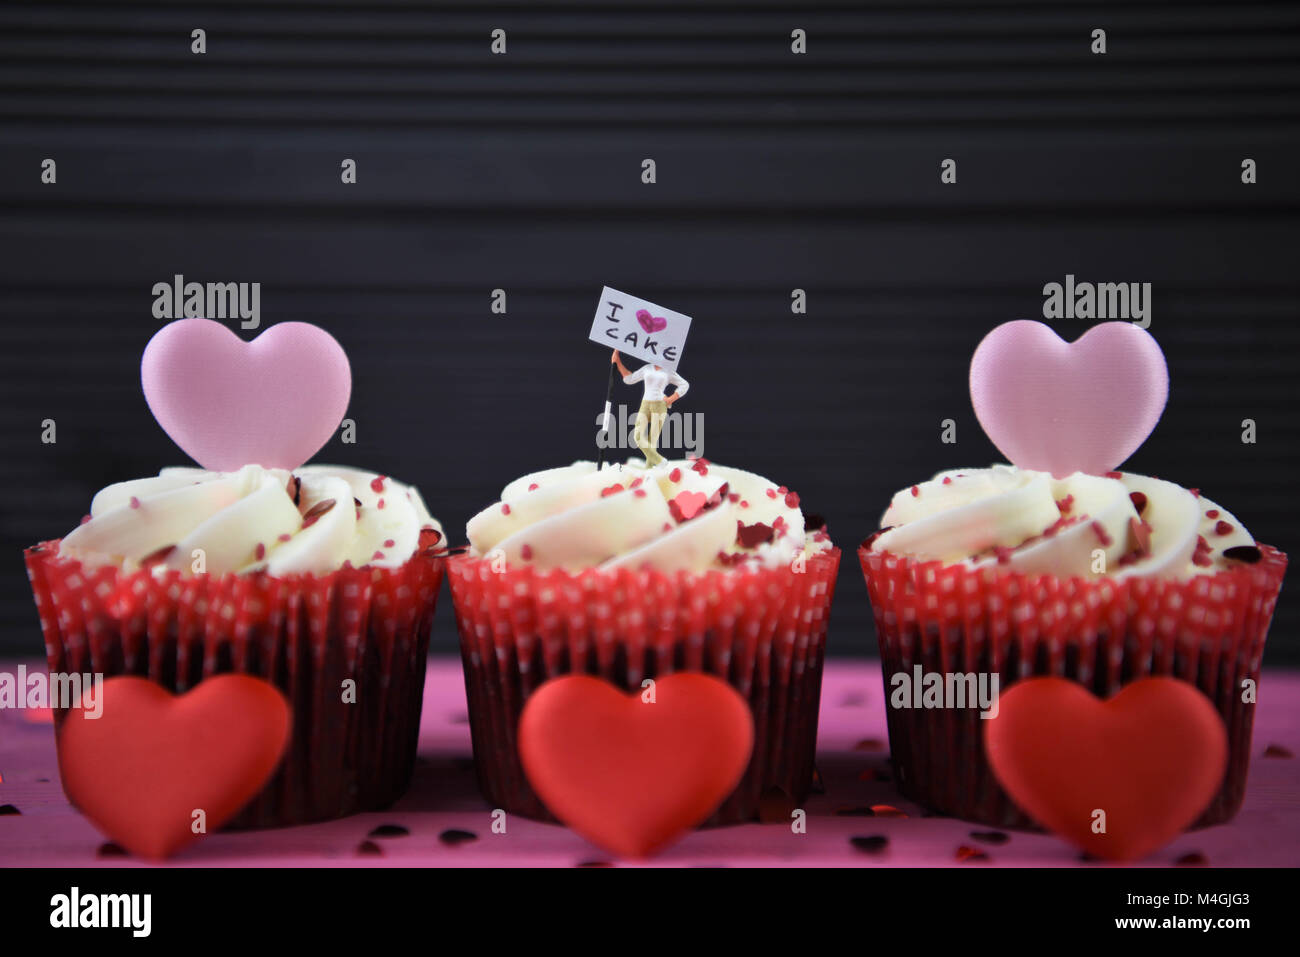 Food cupcakes avec love heart shapes et miniature signe pour i love cake Banque D'Images